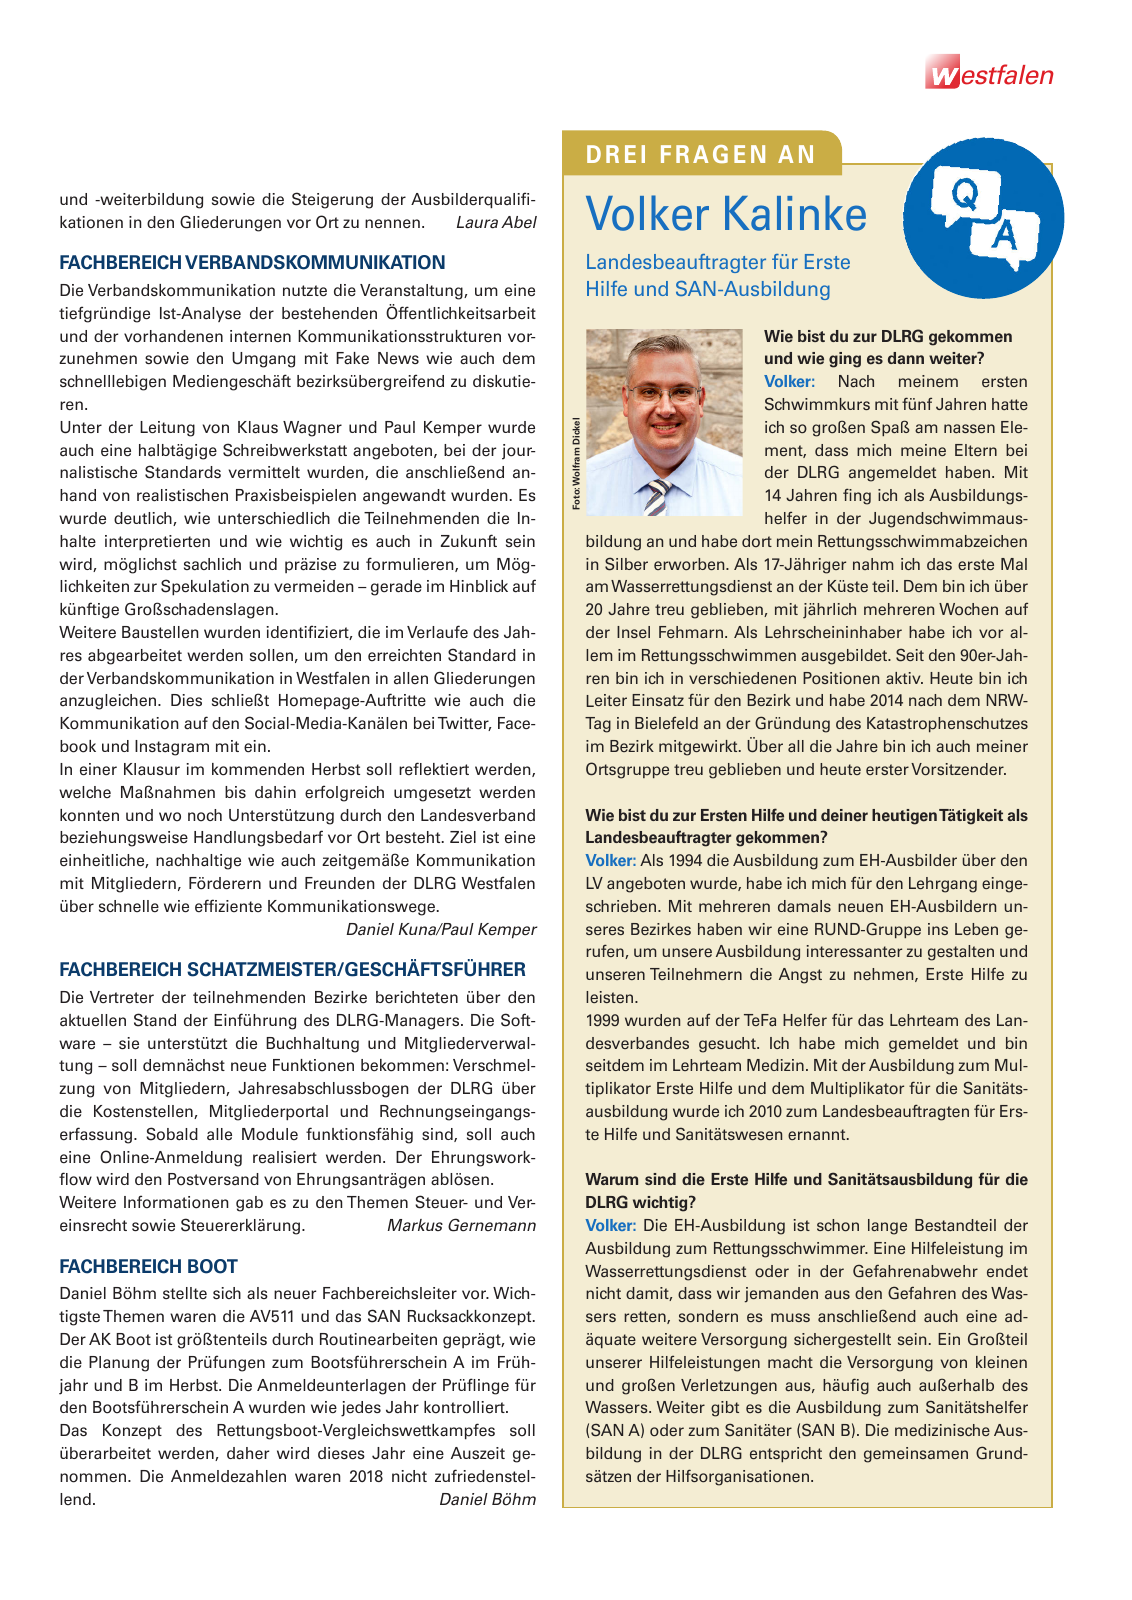 Vorschau Lebensretter 1/2019 –  Regionalausgabe Westfalen Seite 7